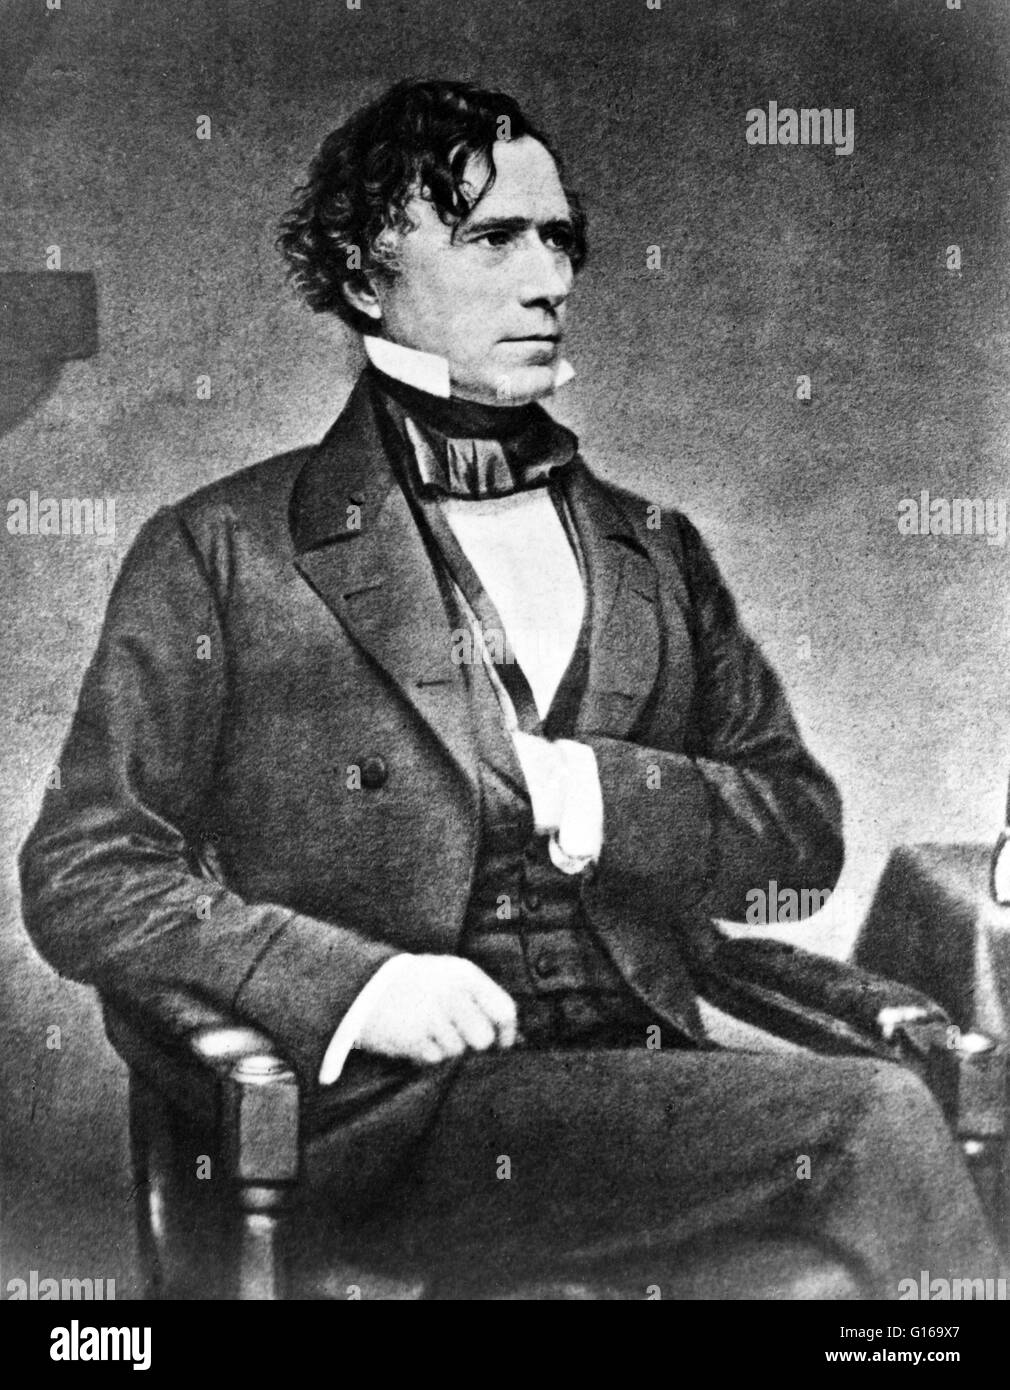 Franklin Pierce (Novembre 23, 1804 - 8 octobre 1869) a été le 14e président des États-Unis (1853-1857). Il était un démocrate et un 'oughface' (un habitant du Nord avec le Sud de sympathie) qui ont servi dans la chambre des représentants et le Sénat. Il t Banque D'Images